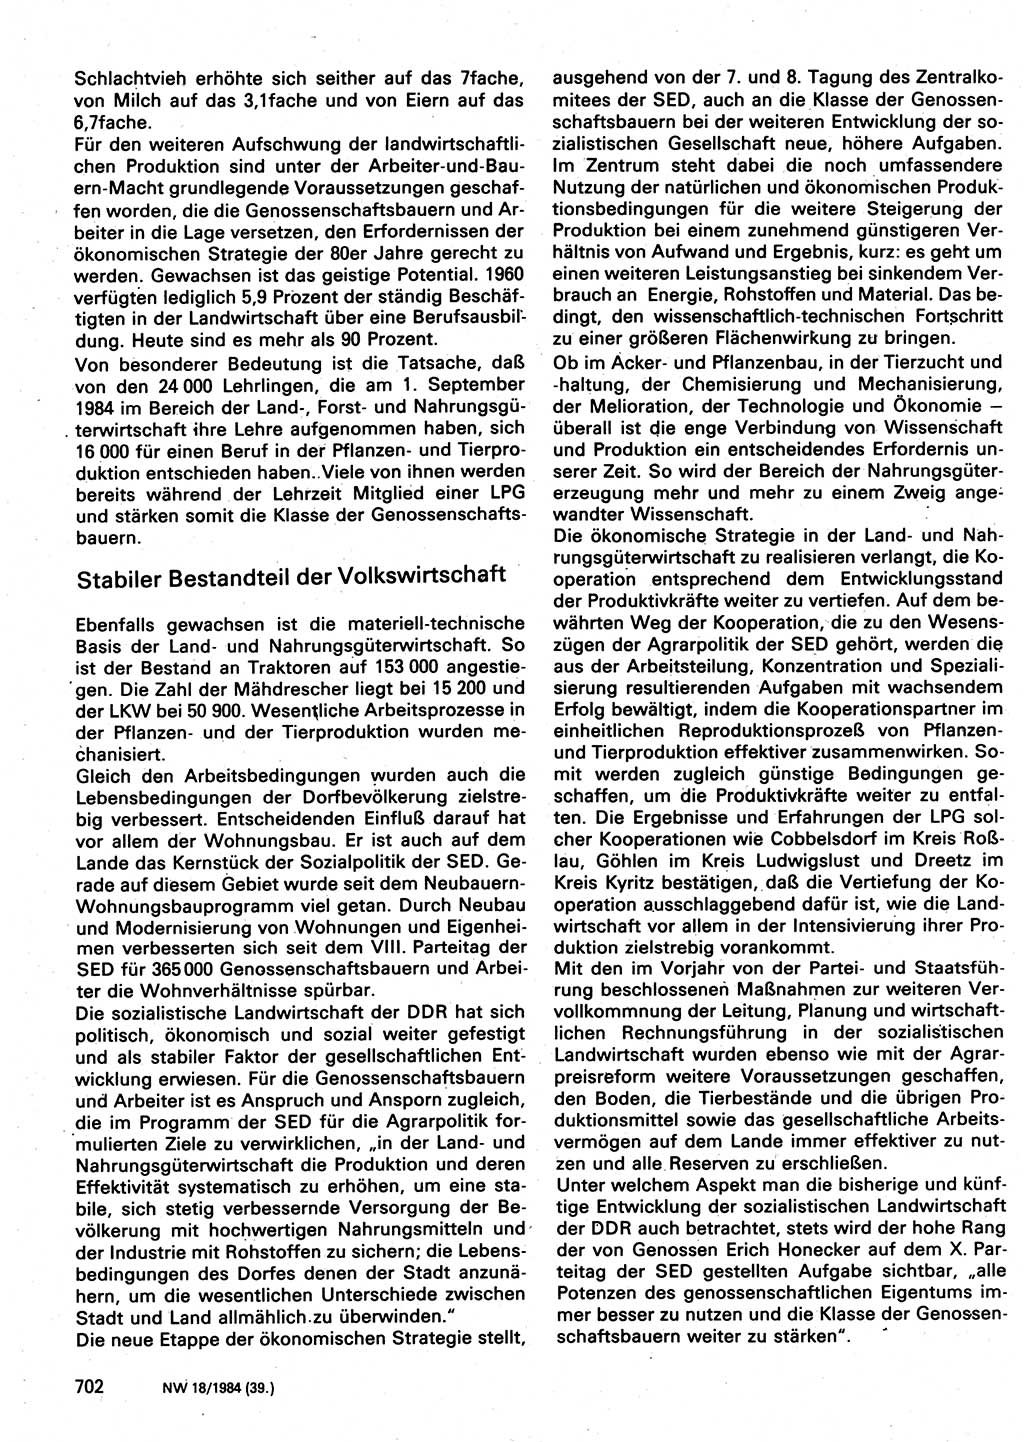 Neuer Weg (NW), Organ des Zentralkomitees (ZK) der SED (Sozialistische Einheitspartei Deutschlands) für Fragen des Parteilebens, 39. Jahrgang [Deutsche Demokratische Republik (DDR)] 1984, Seite 702 (NW ZK SED DDR 1984, S. 702)